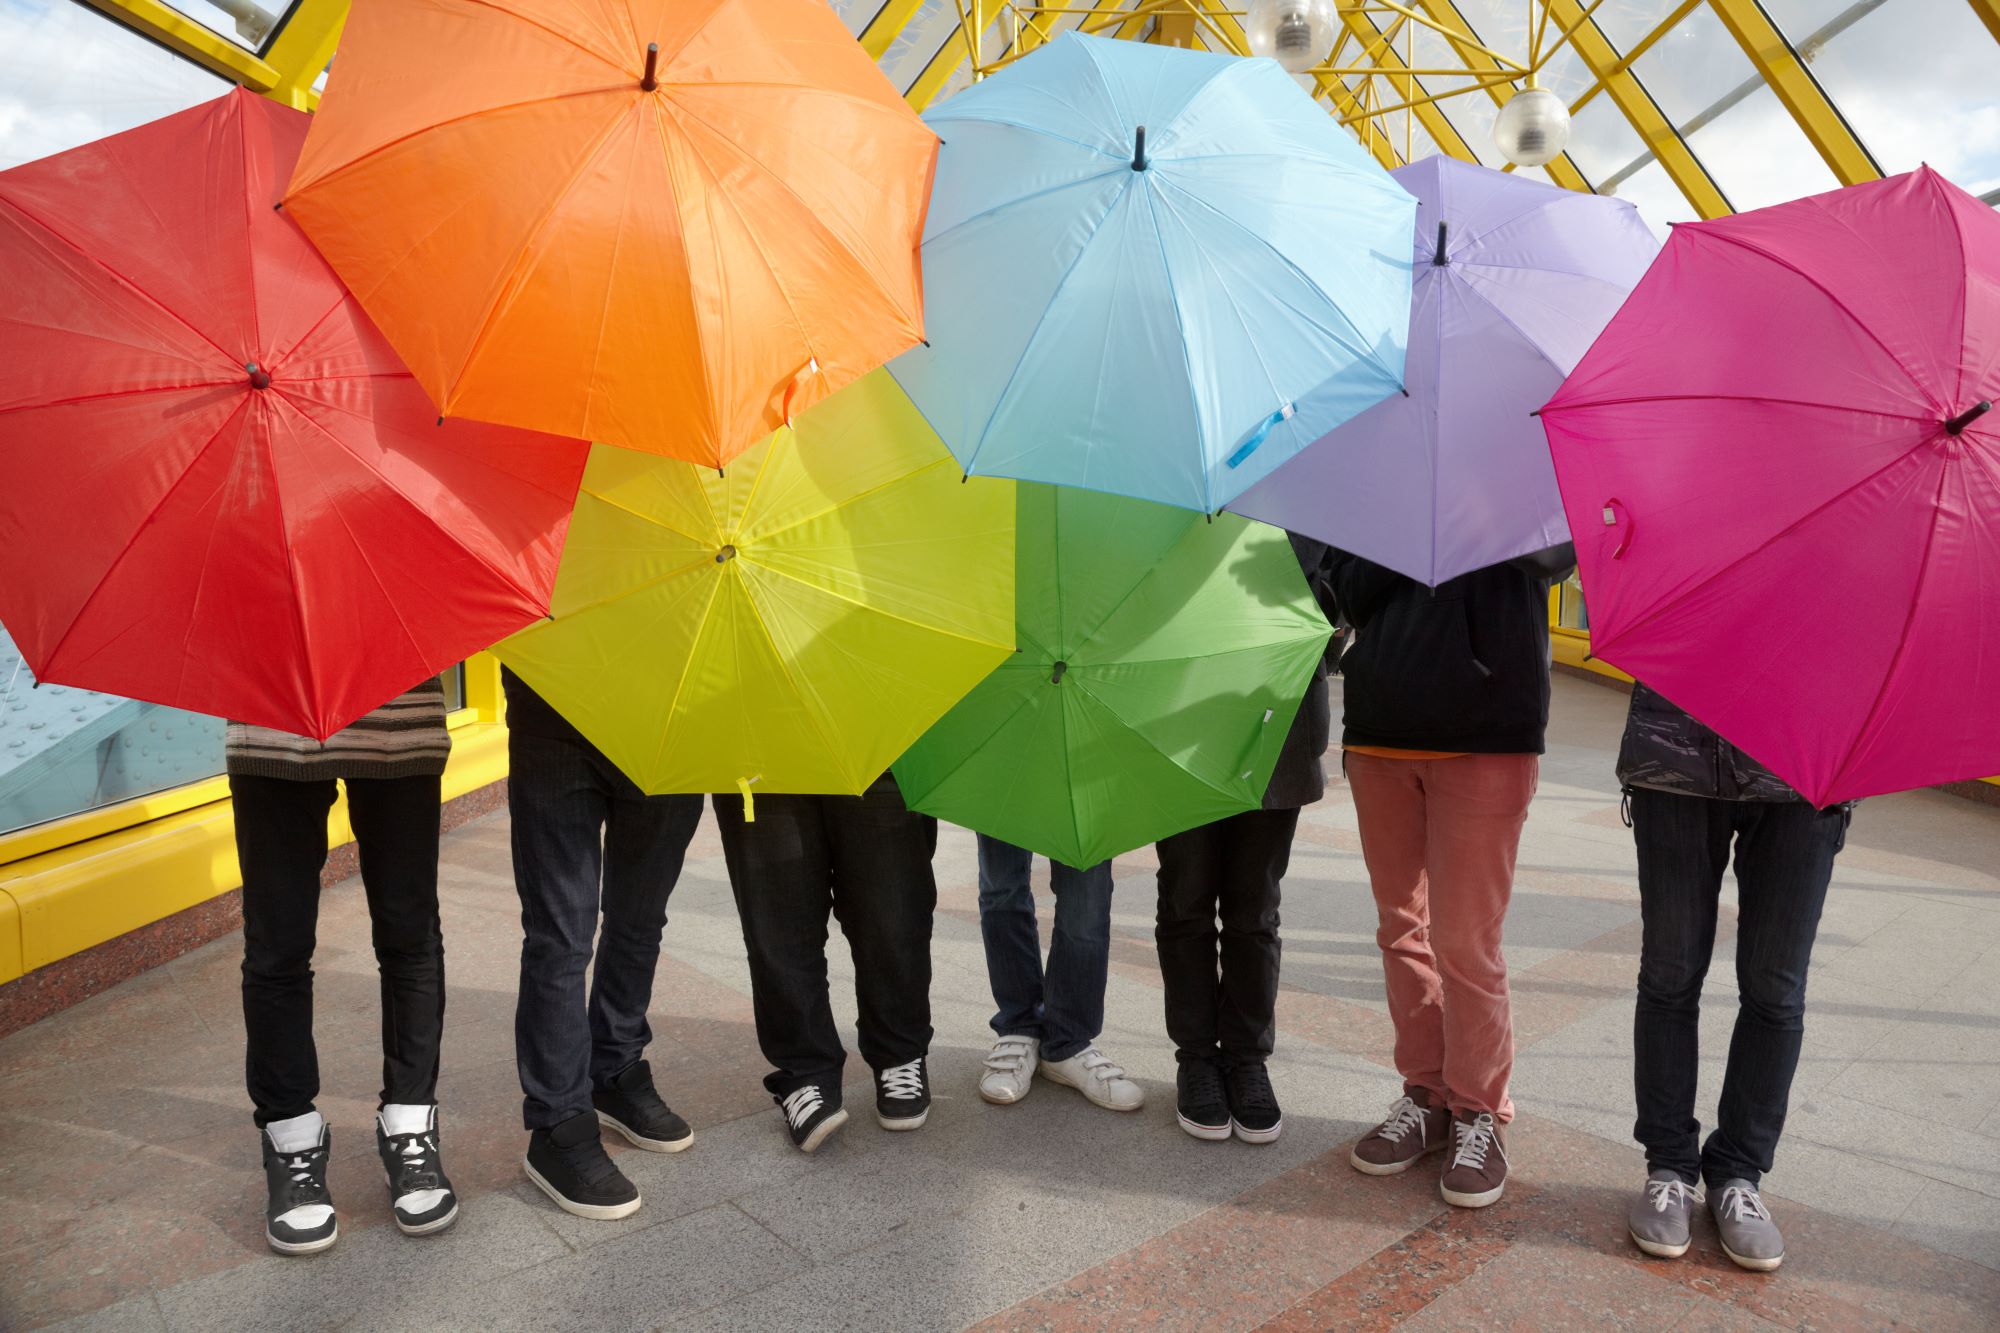 Bunter Regenschirme werden von mehreren Menschen hochgehalten